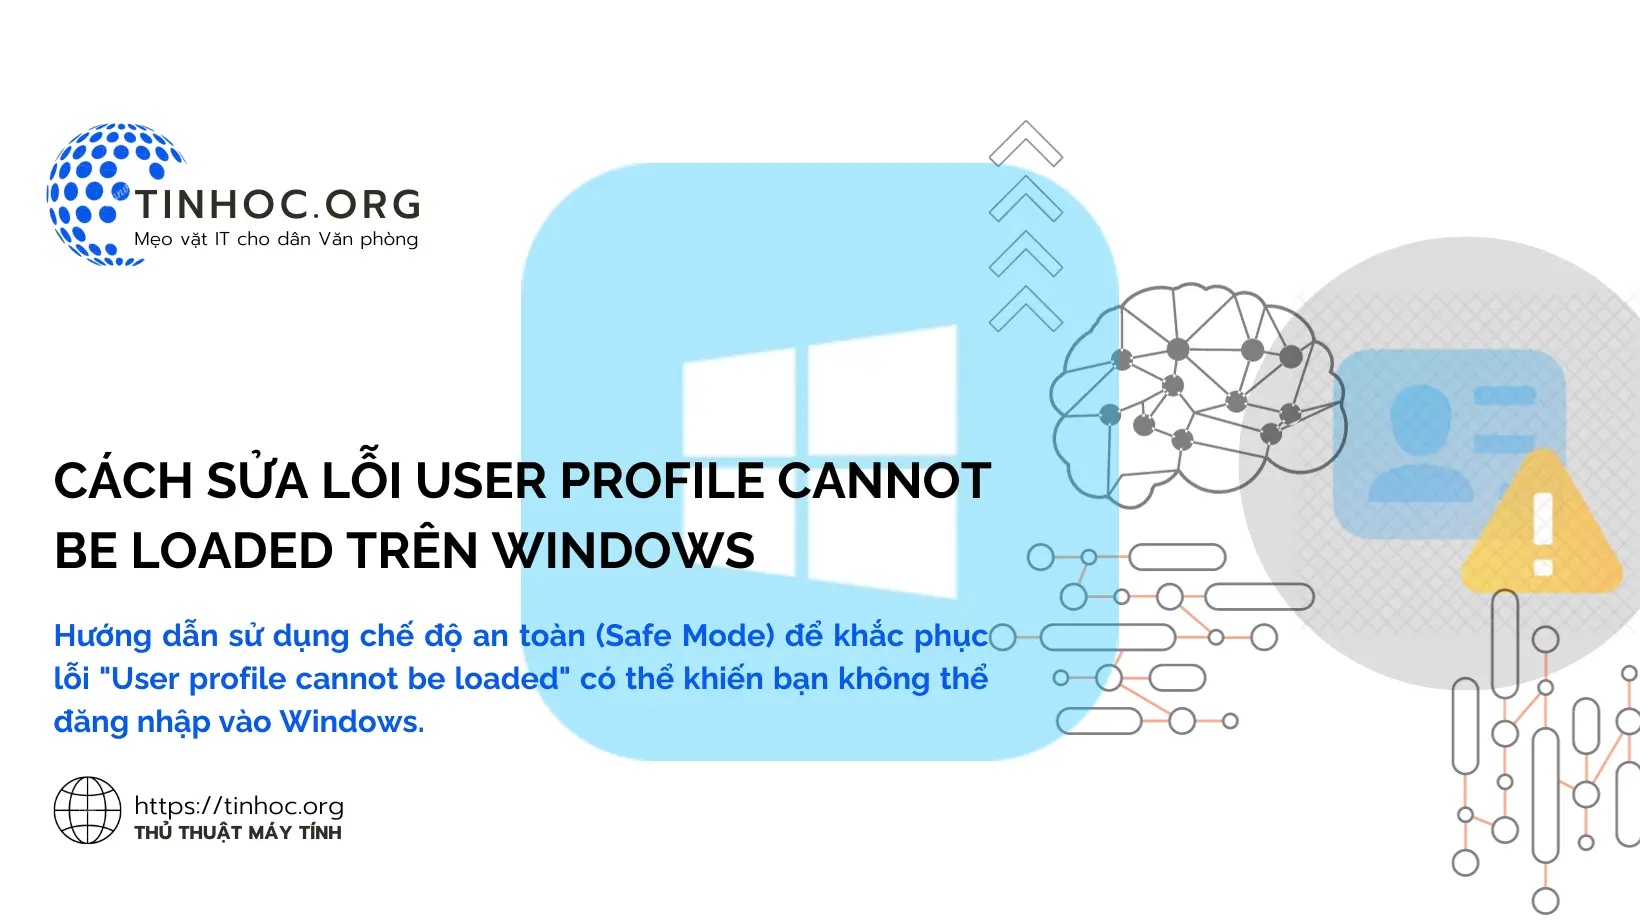 Hướng dẫn sử dụng chế độ an toàn (Safe Mode) để khắc phục lỗi "User profile cannot be loaded" có thể khiến bạn không thể đăng nhập vào Windows.